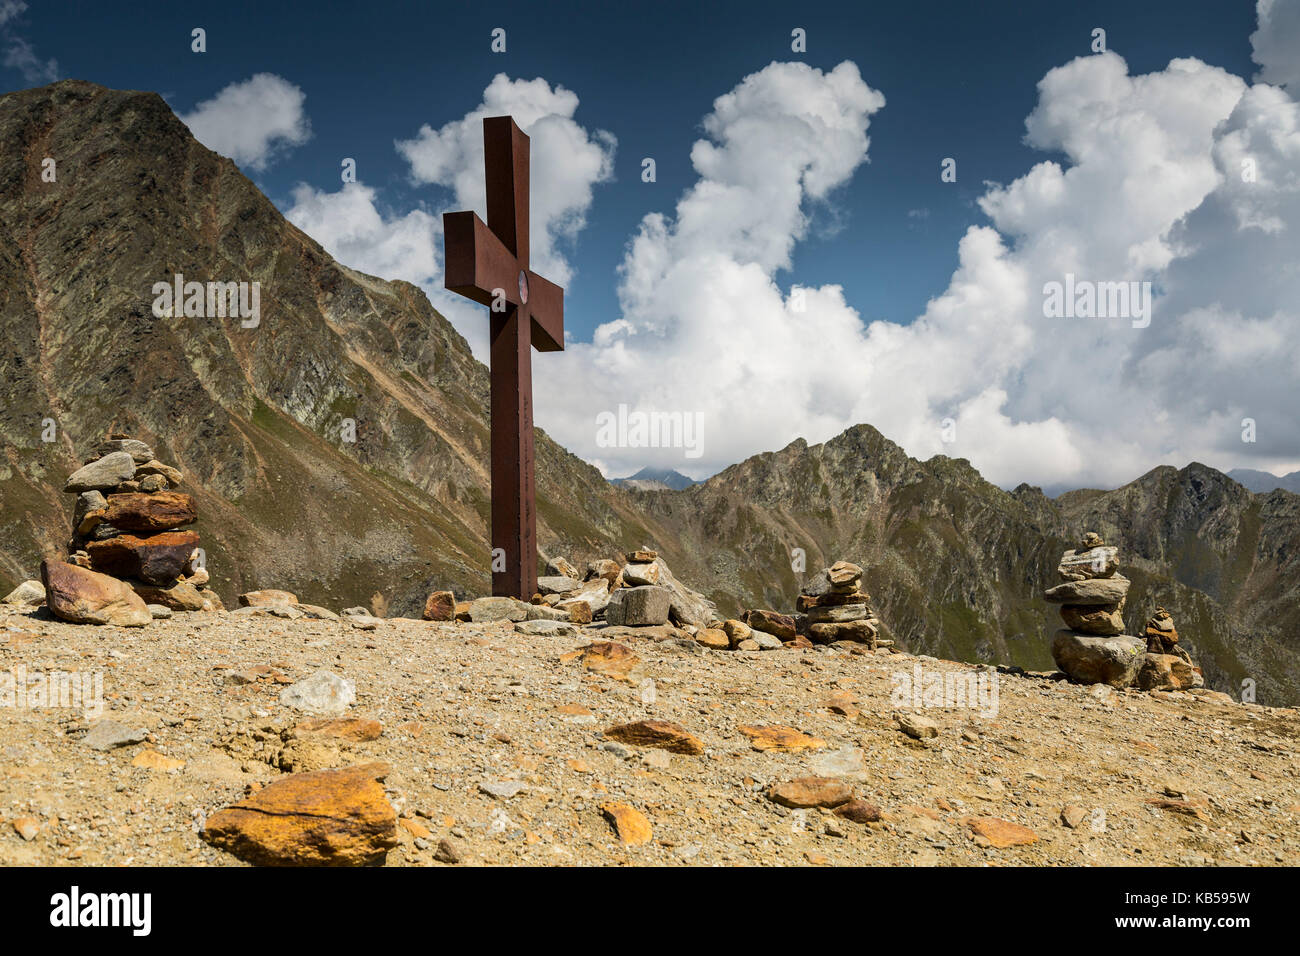 Europe, Autriche/Italie, Alpes, montagnes, vue de Passo Rombo - Timmelsjoch Banque D'Images